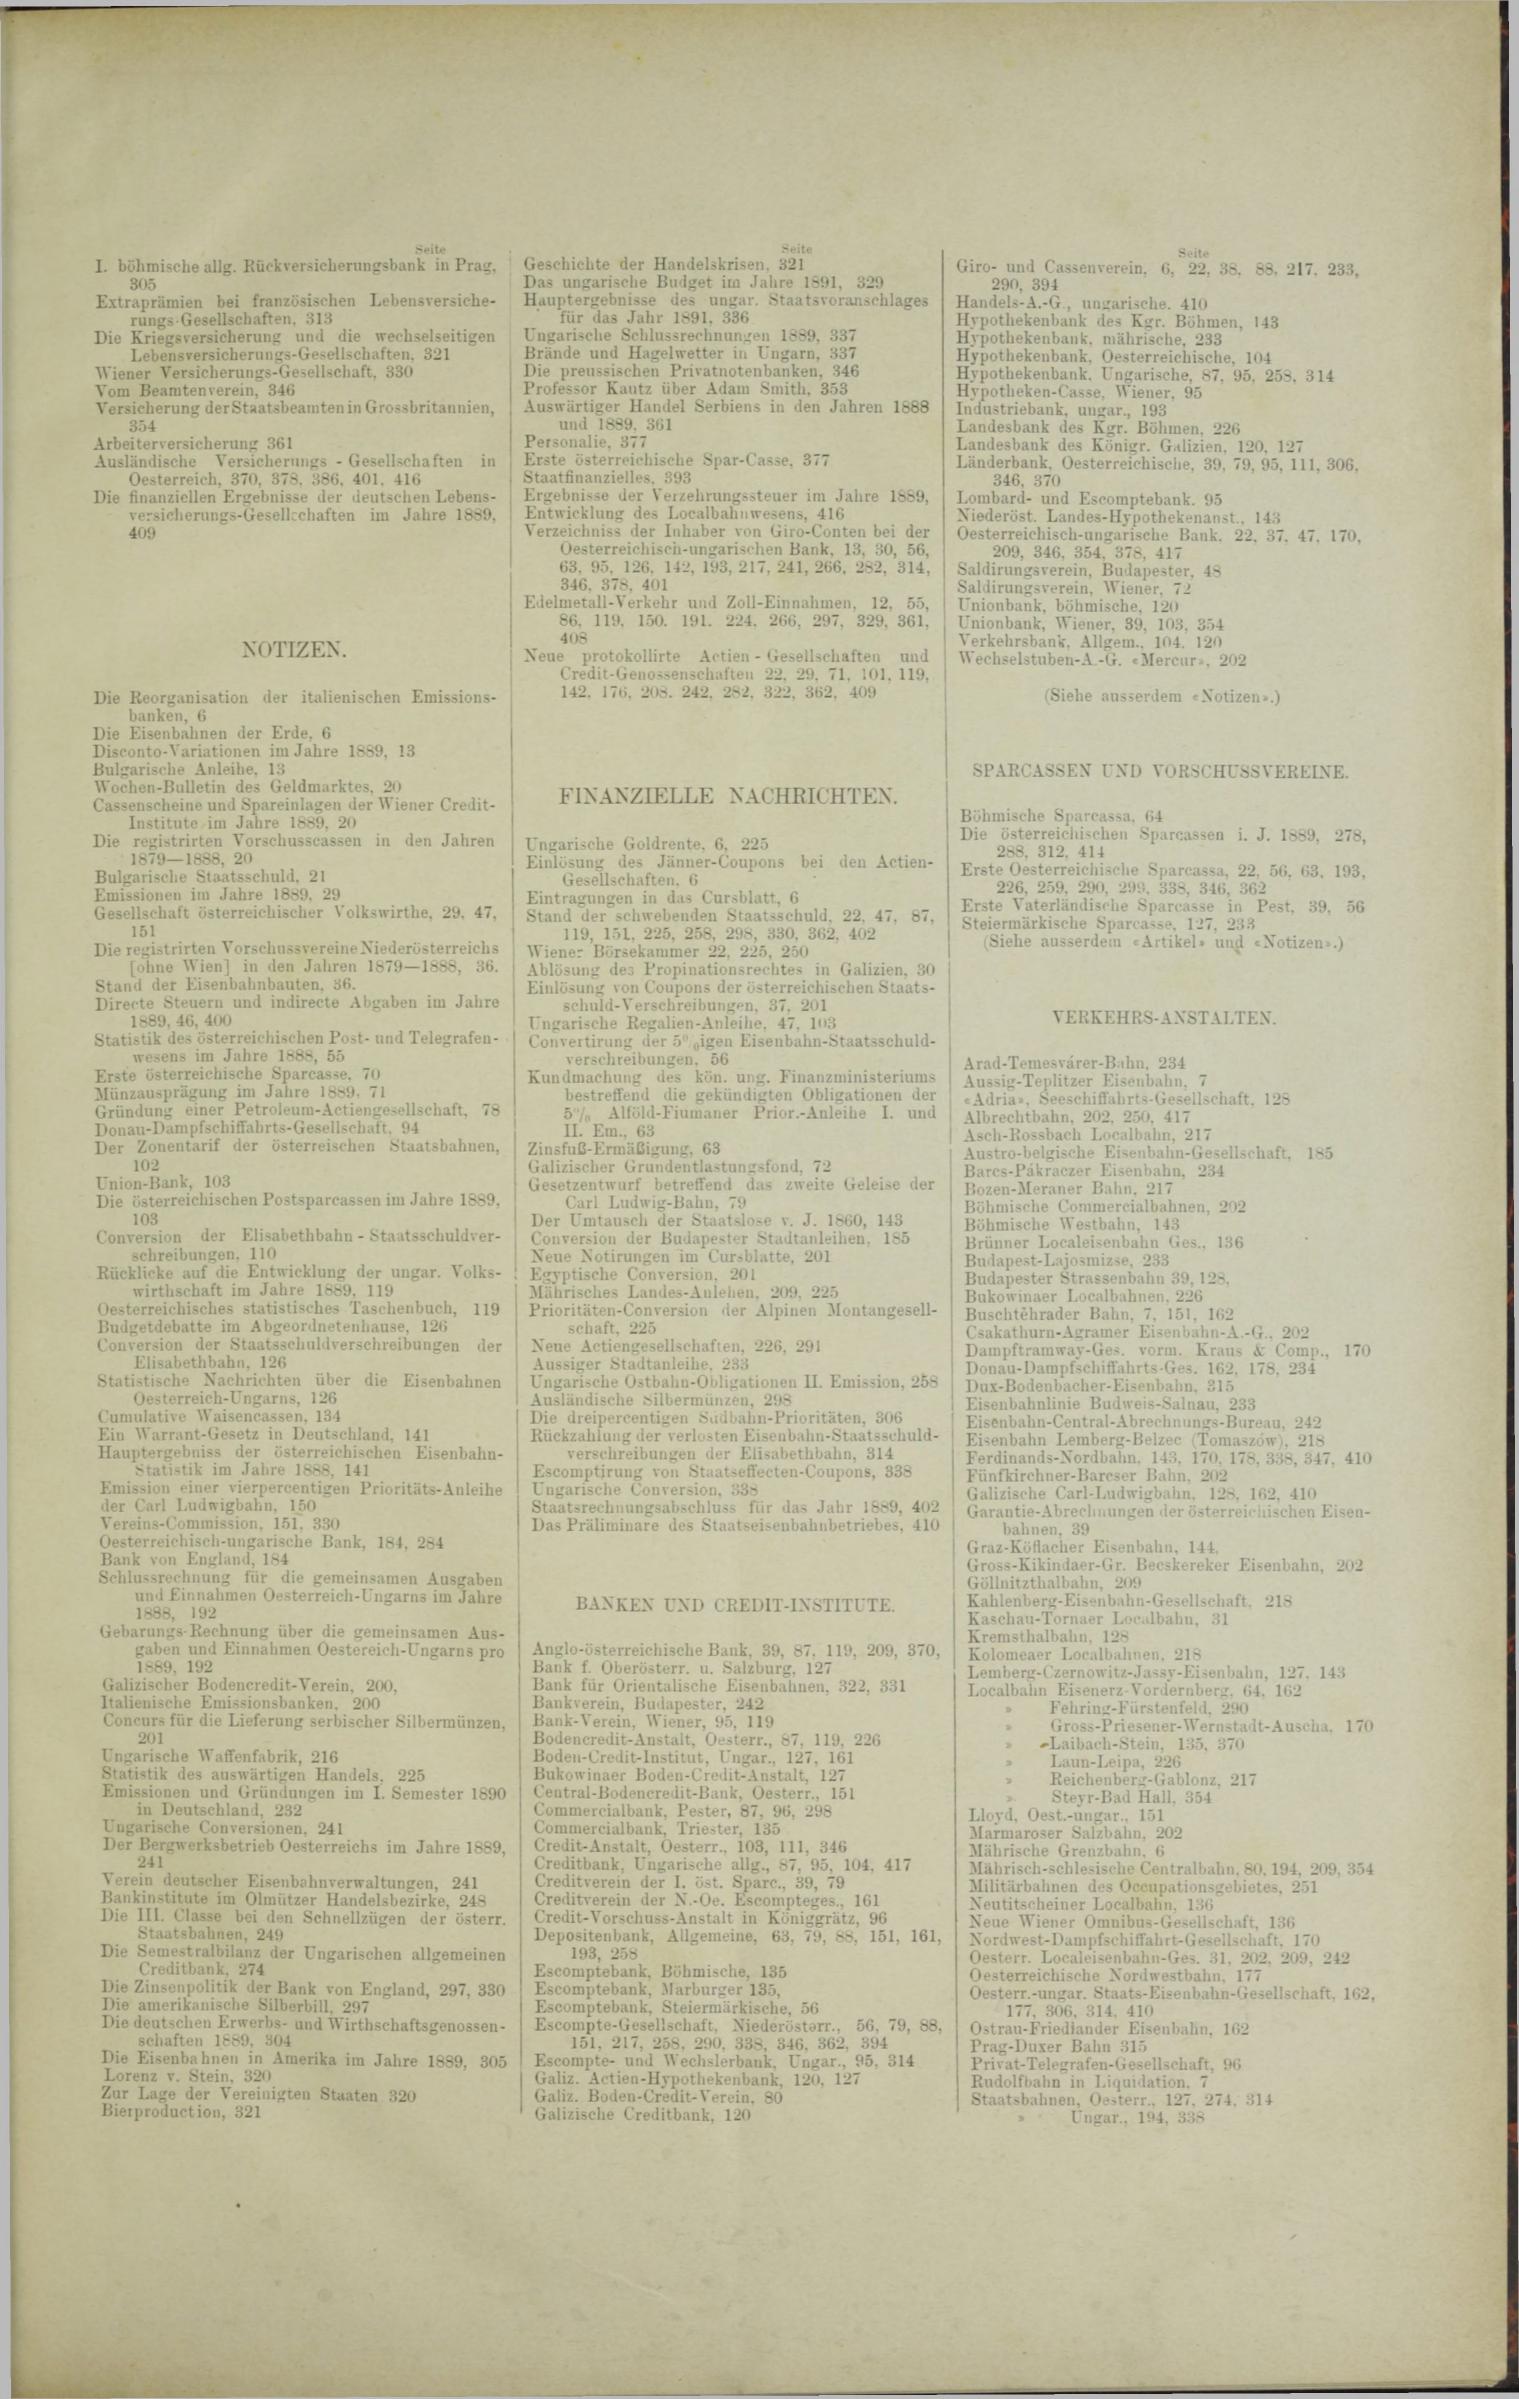 Der Tresor 11.09.1890 - Seite 11